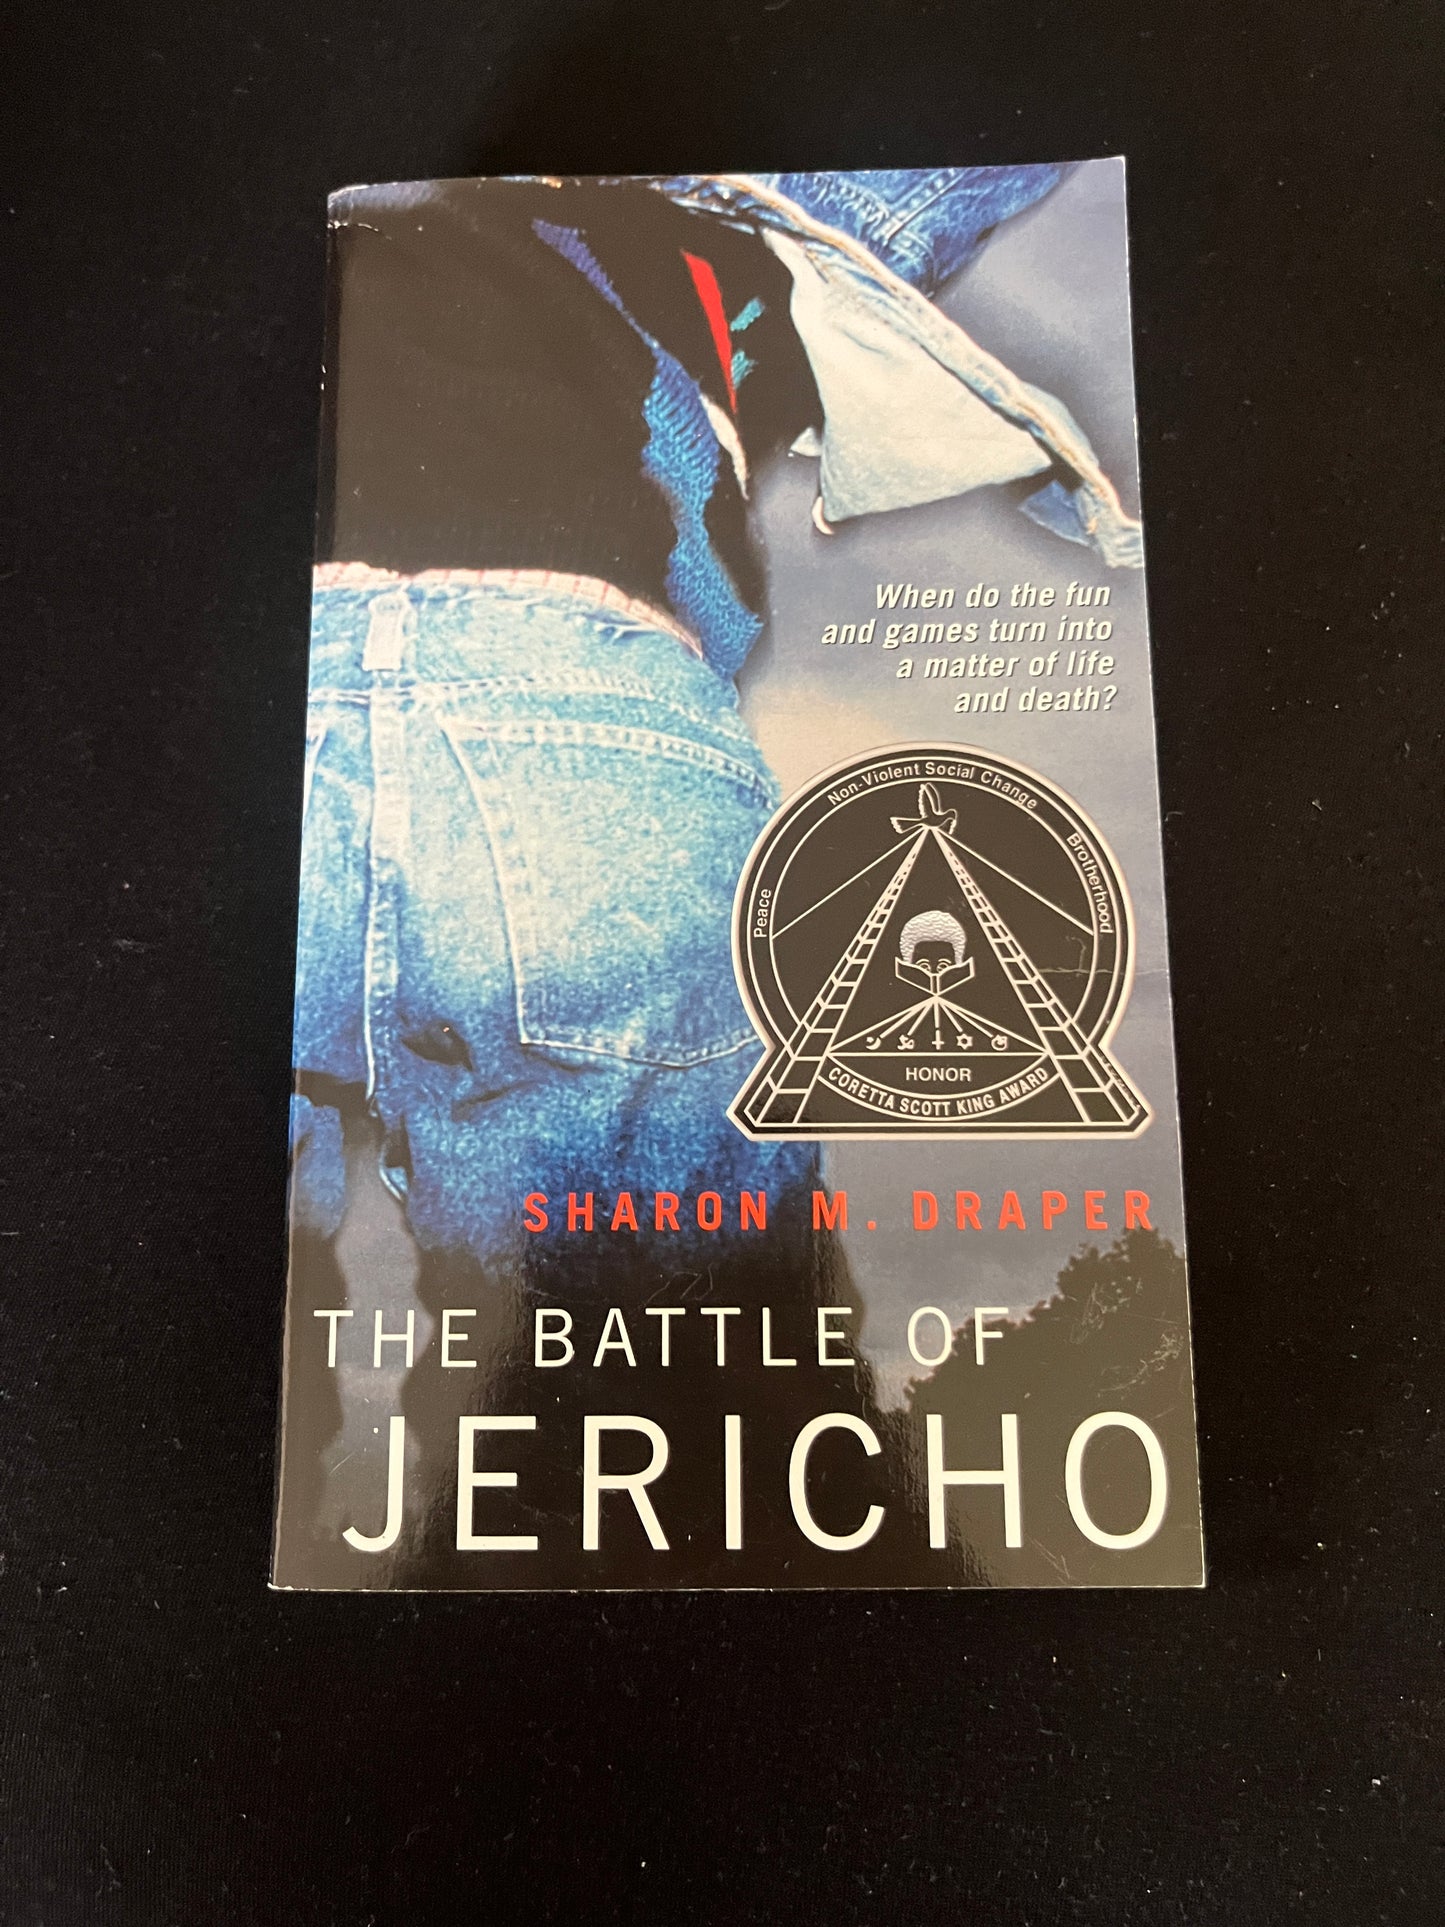 BATTLE OF JERICHO by Sharon M. Draper